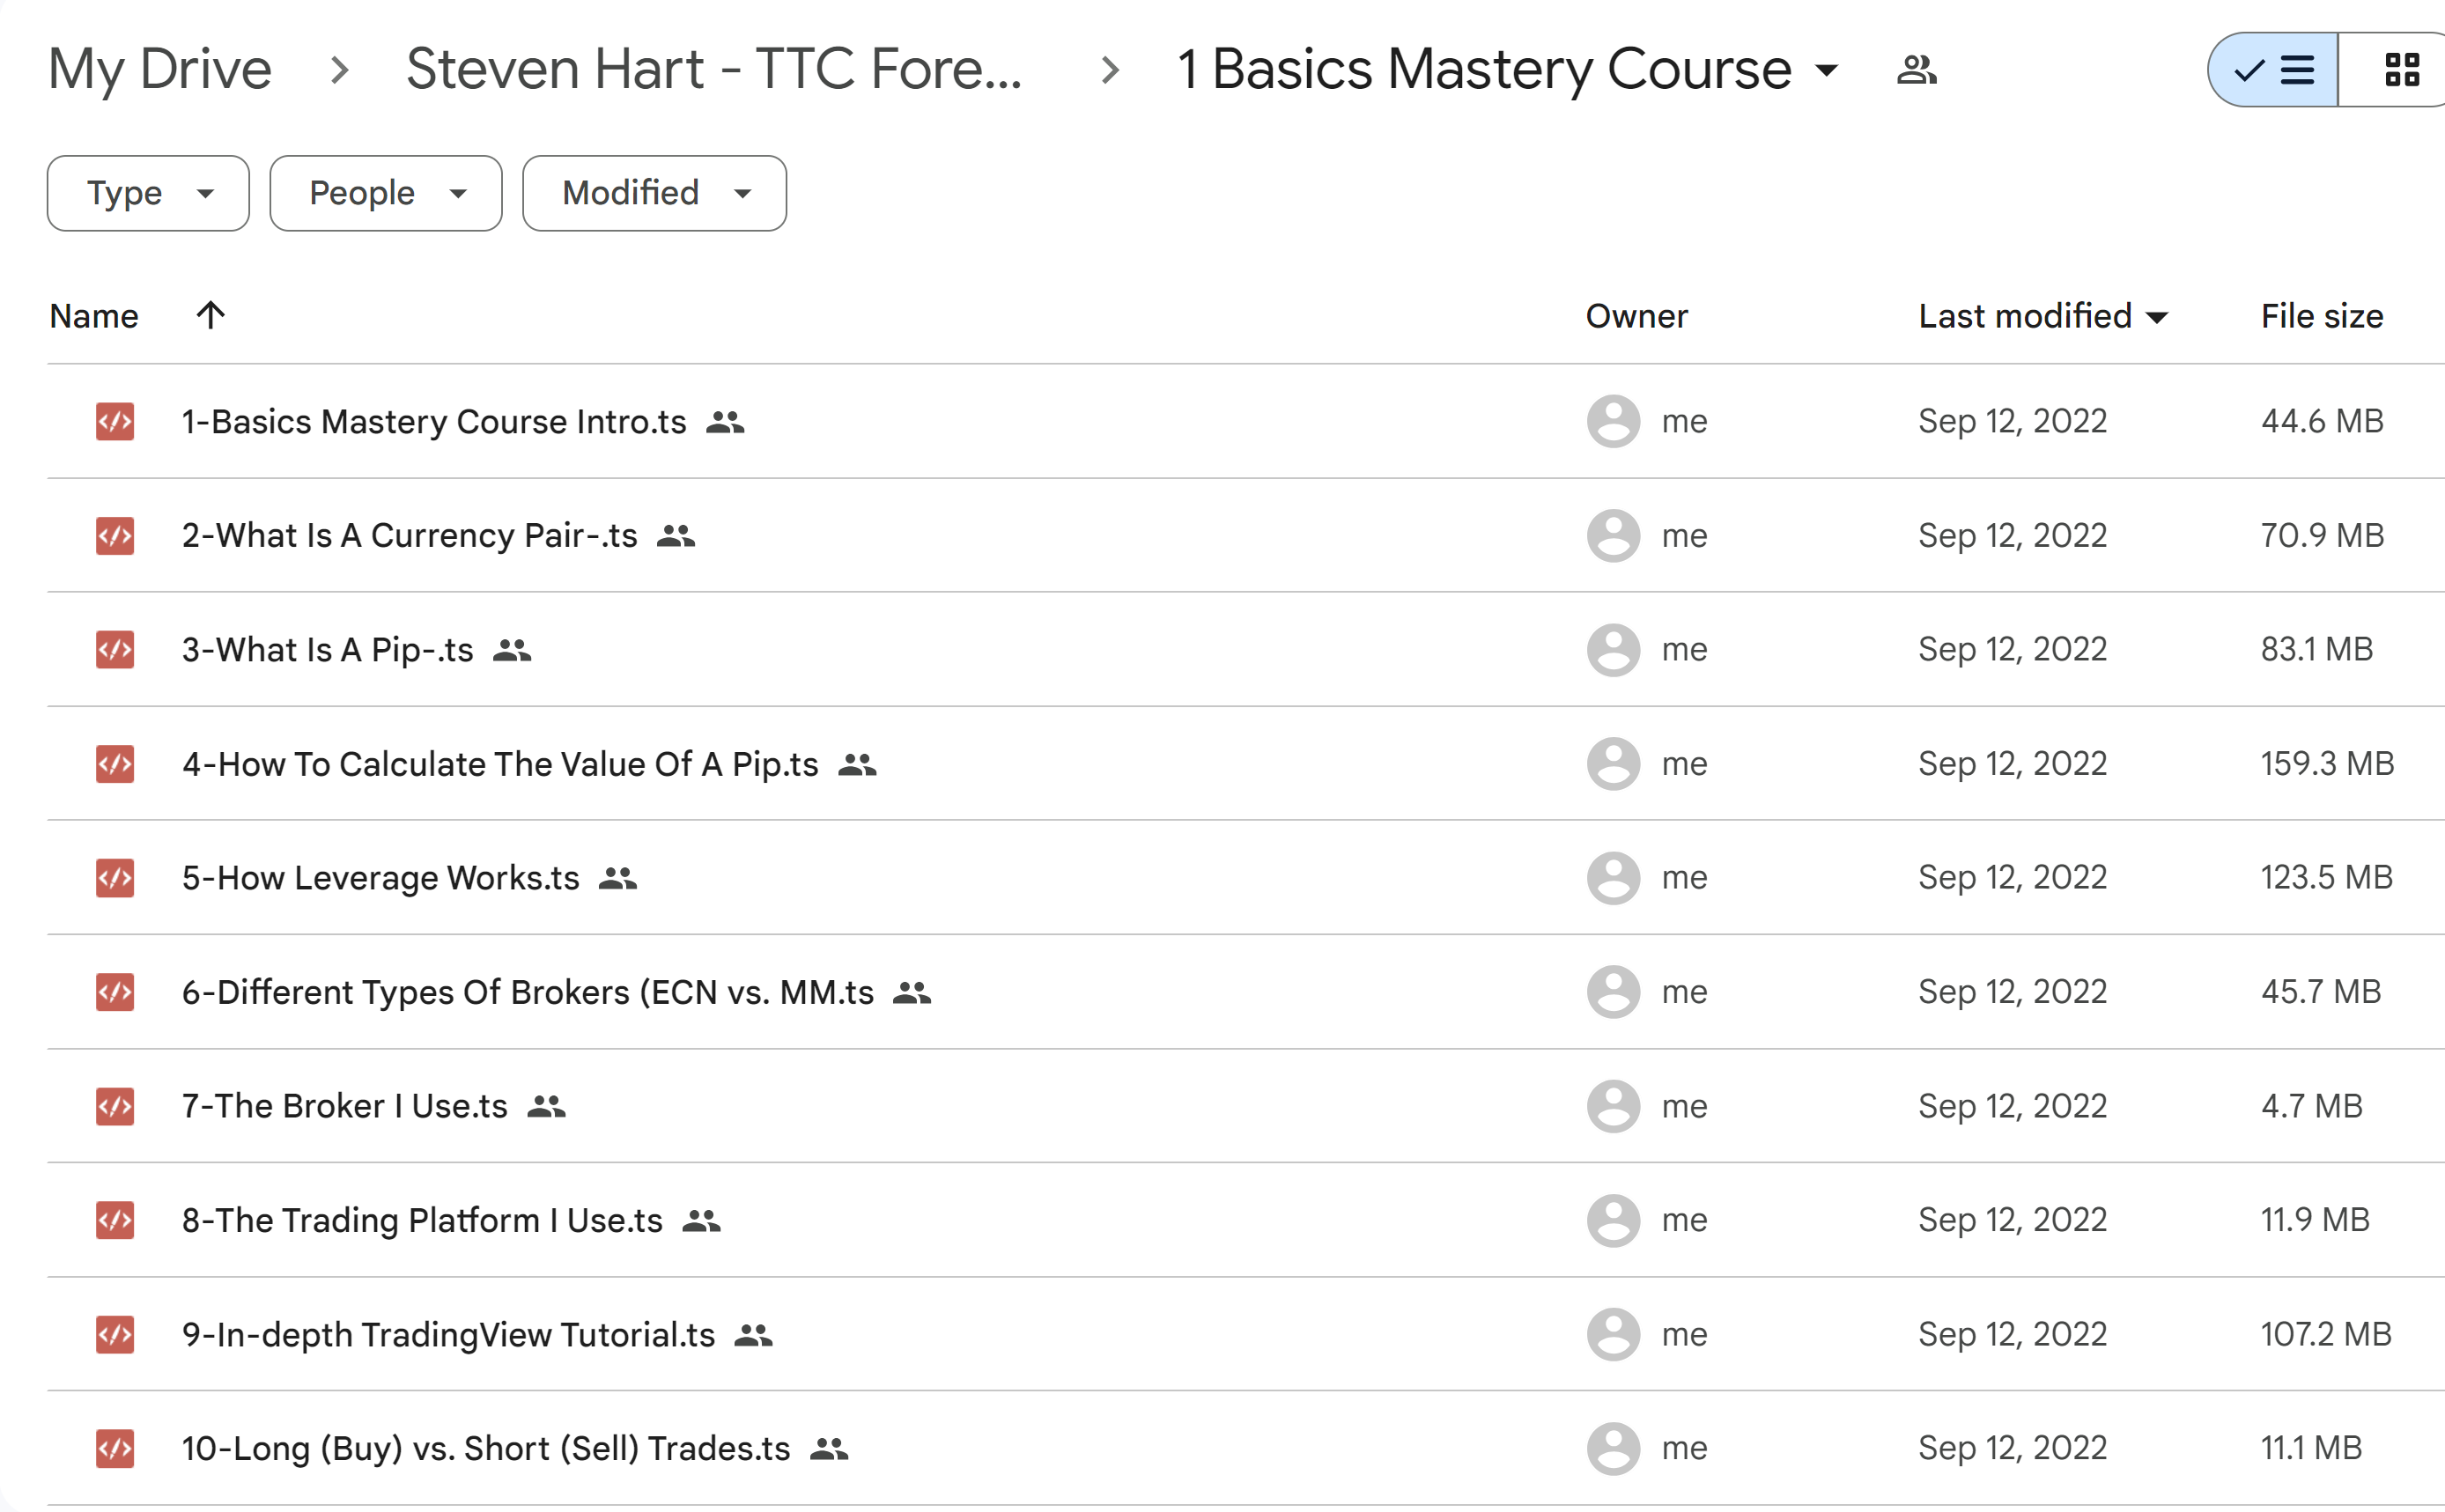 Basic Mastery Course Ttc Forex